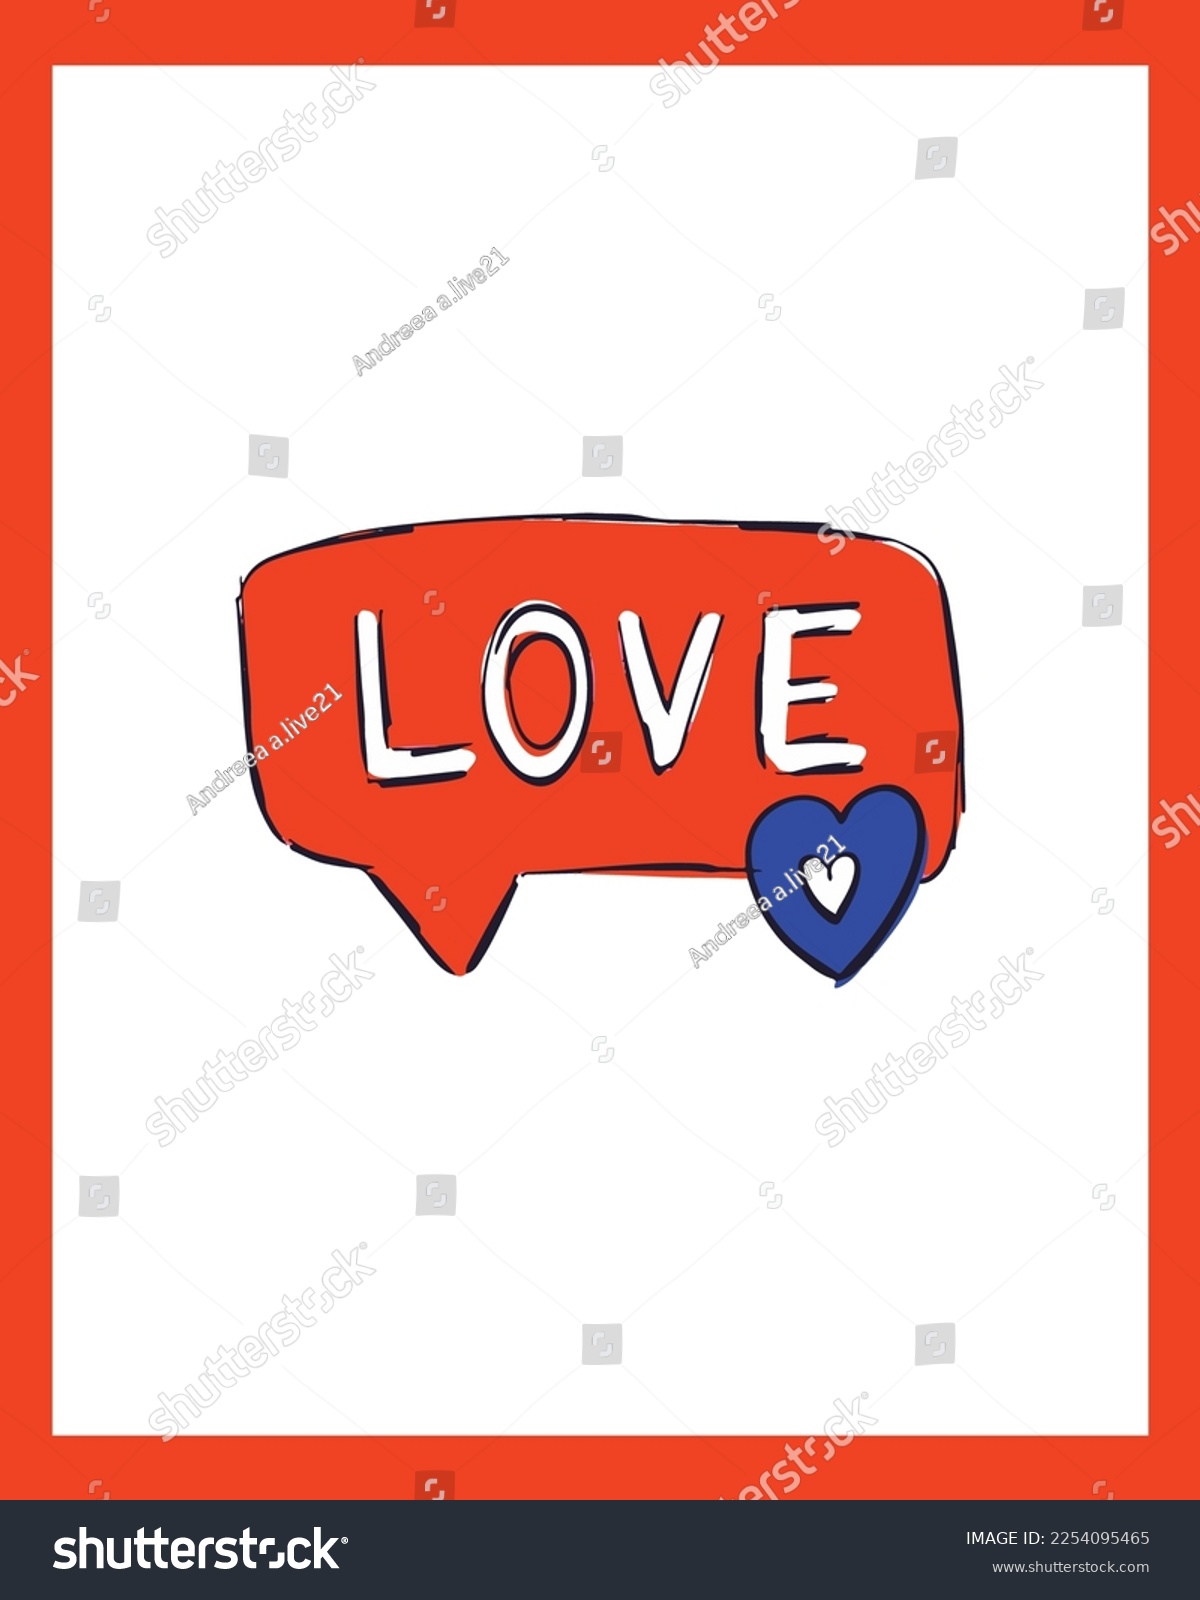 SVG of Valentine's Day Vector SVG, Doodle Hearts Illustration, Hearts Vectors, Love Illustration, Pink Hearts, Painted Hearts Illustration, Valentines Day Doodle svg